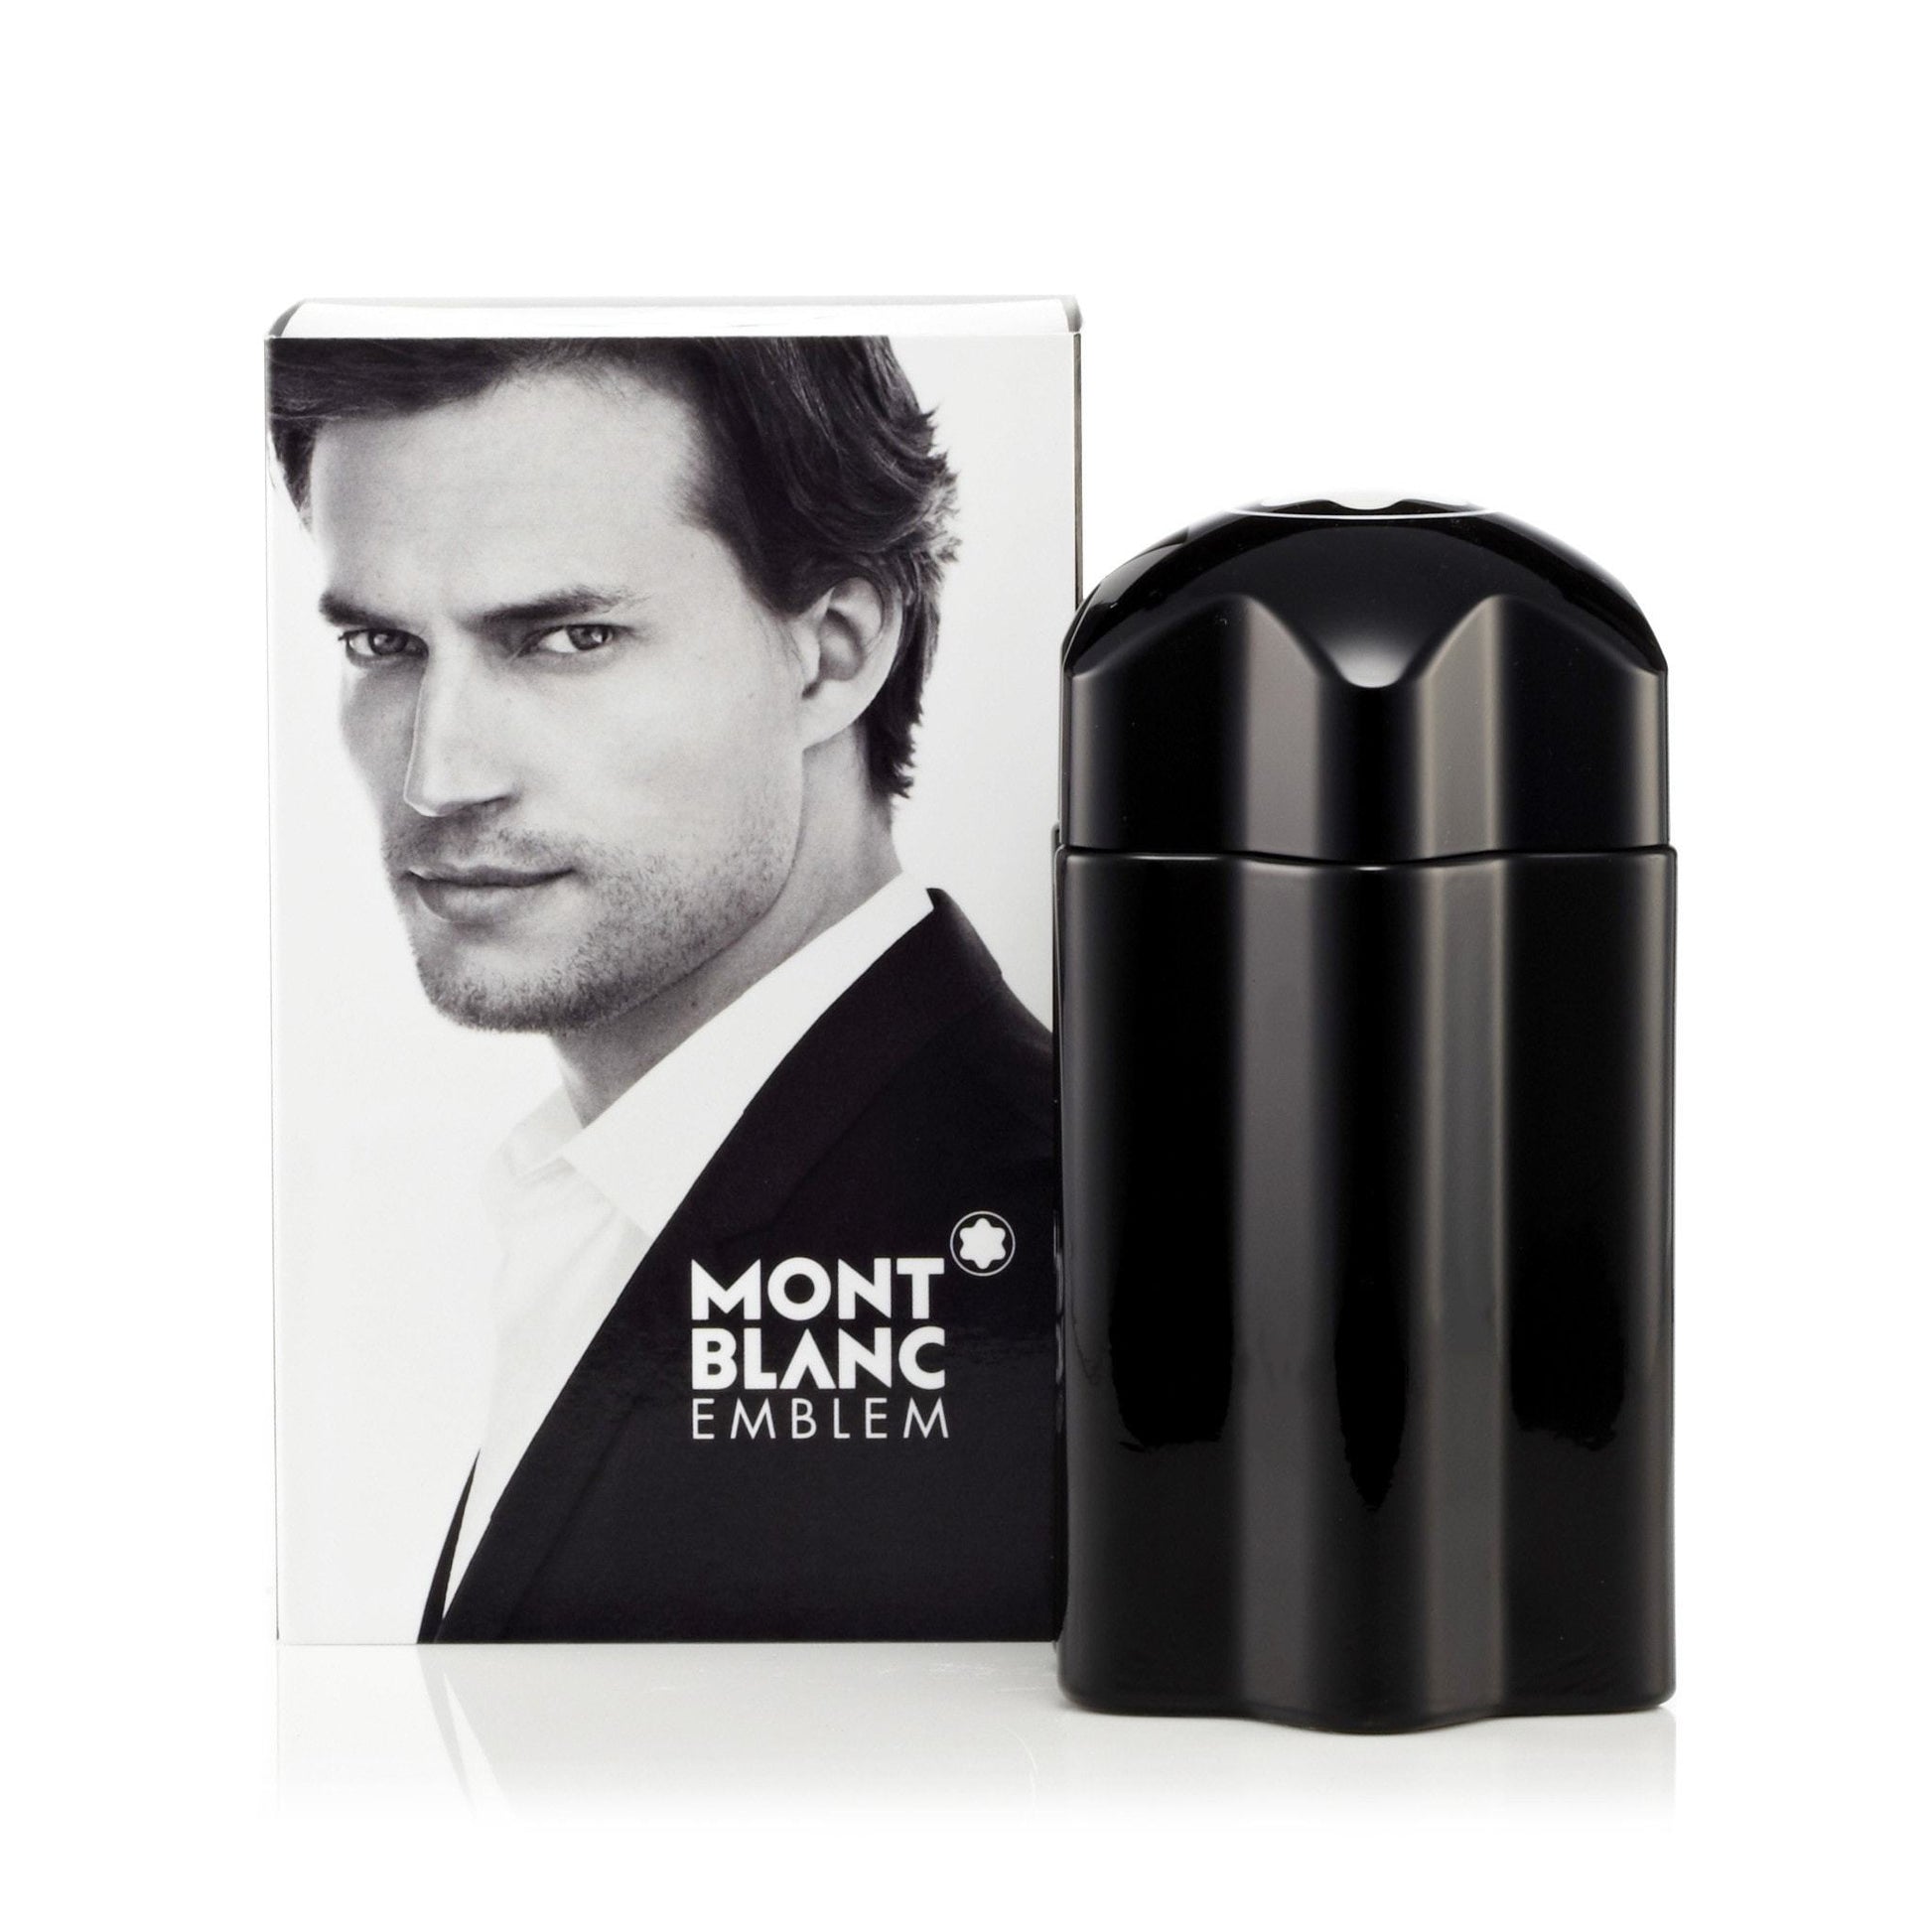 Emblem Eau de Toilette Spray for Men by Montblanc, Product image 4